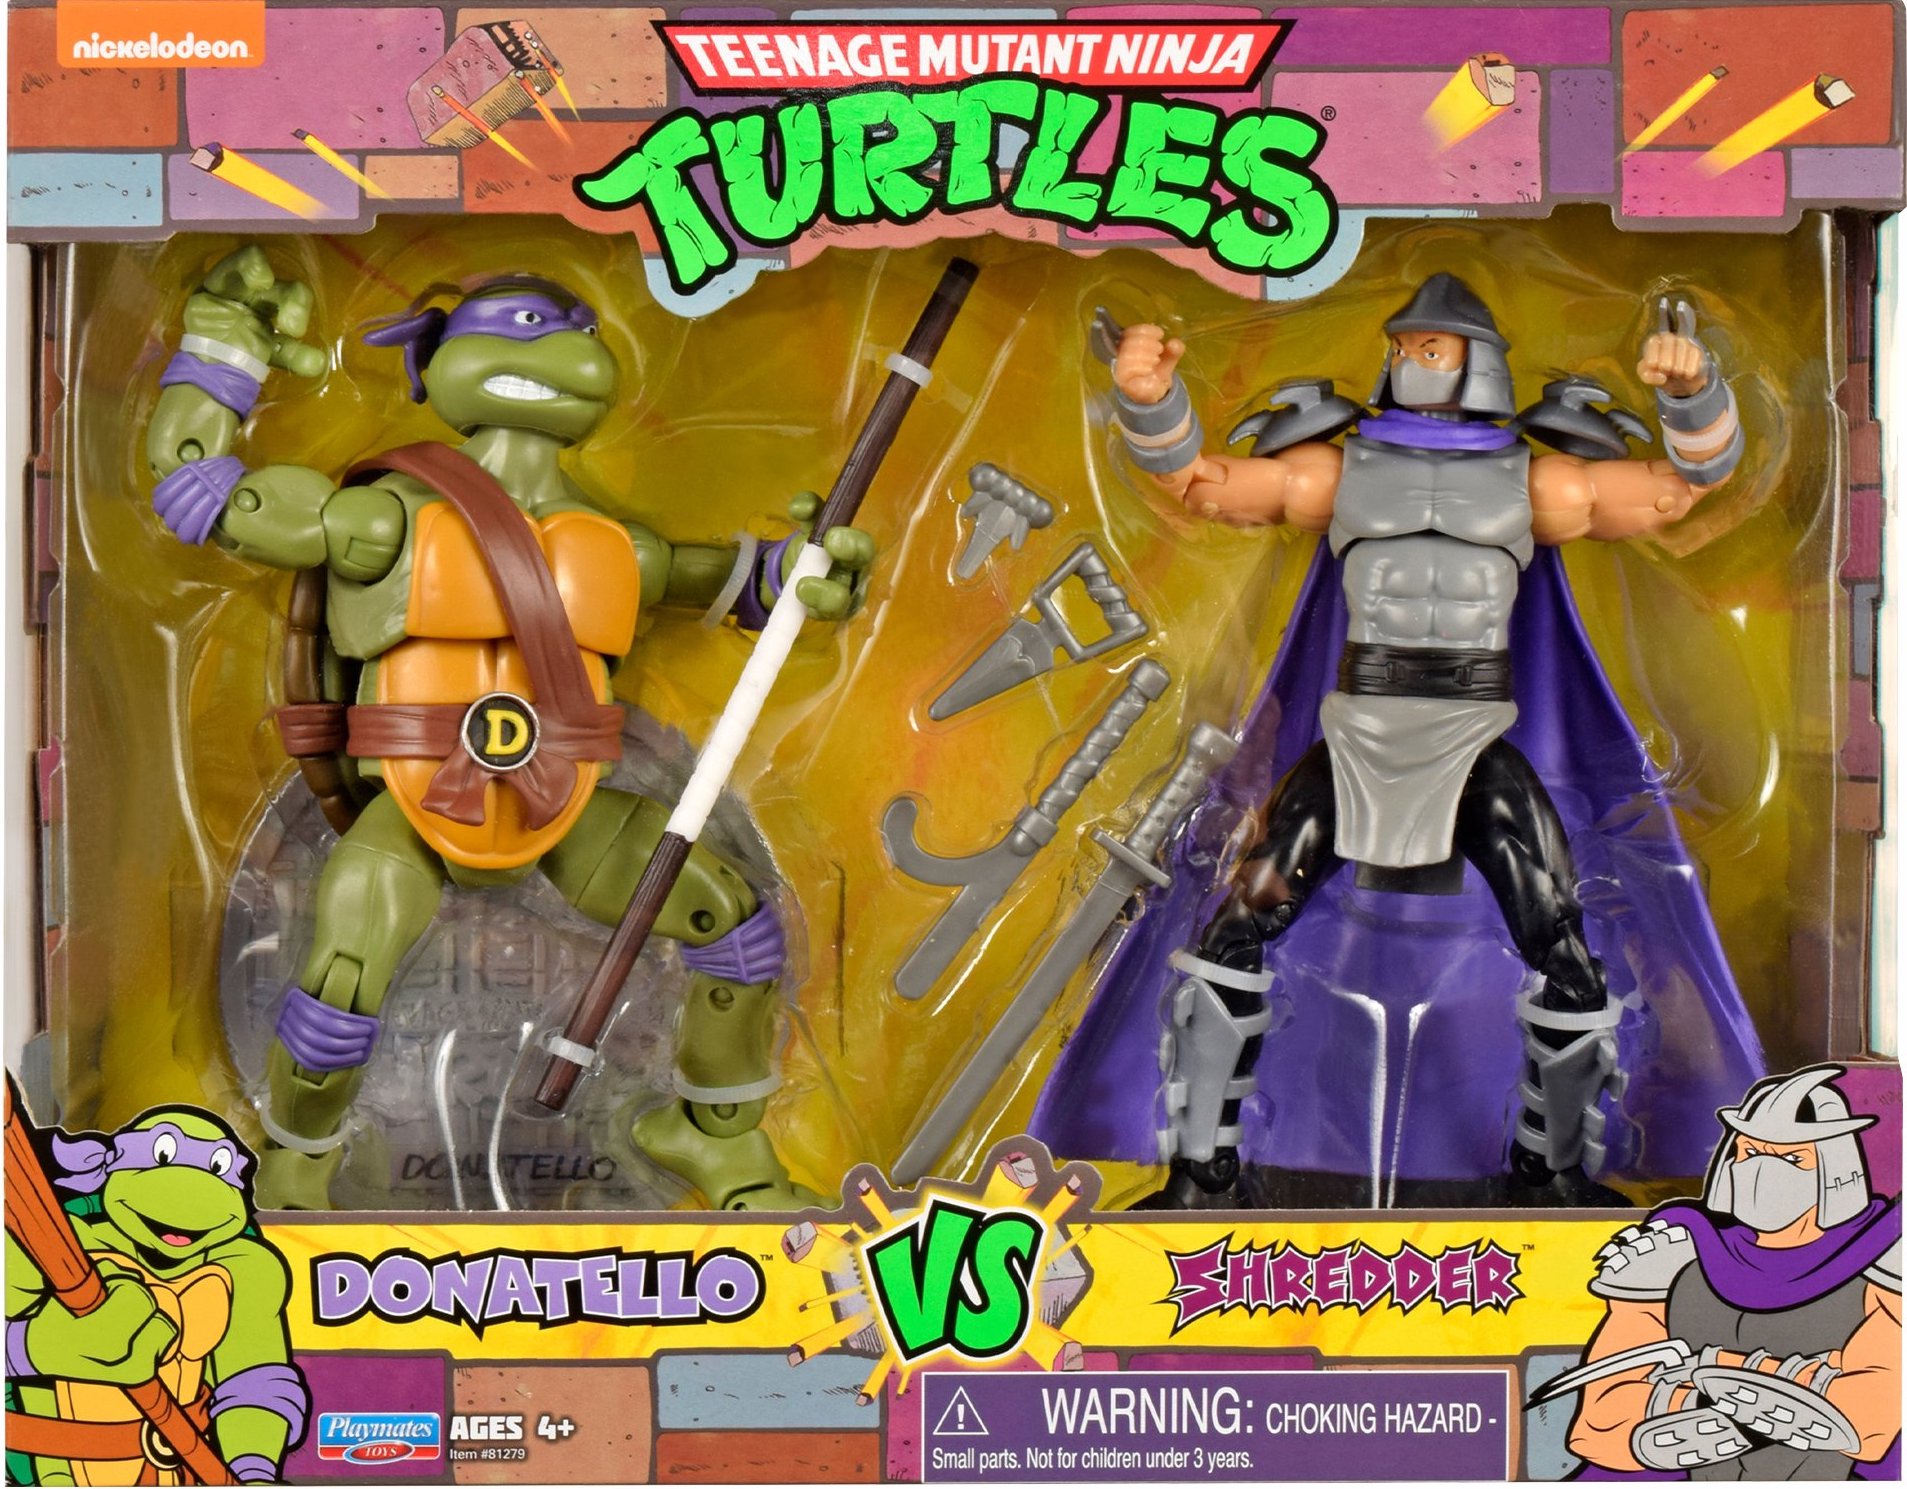 https://www.actionfigure411.com/teenage-mutant-ninja-turtles/images/donatello-vs-shredder-3642.jpg